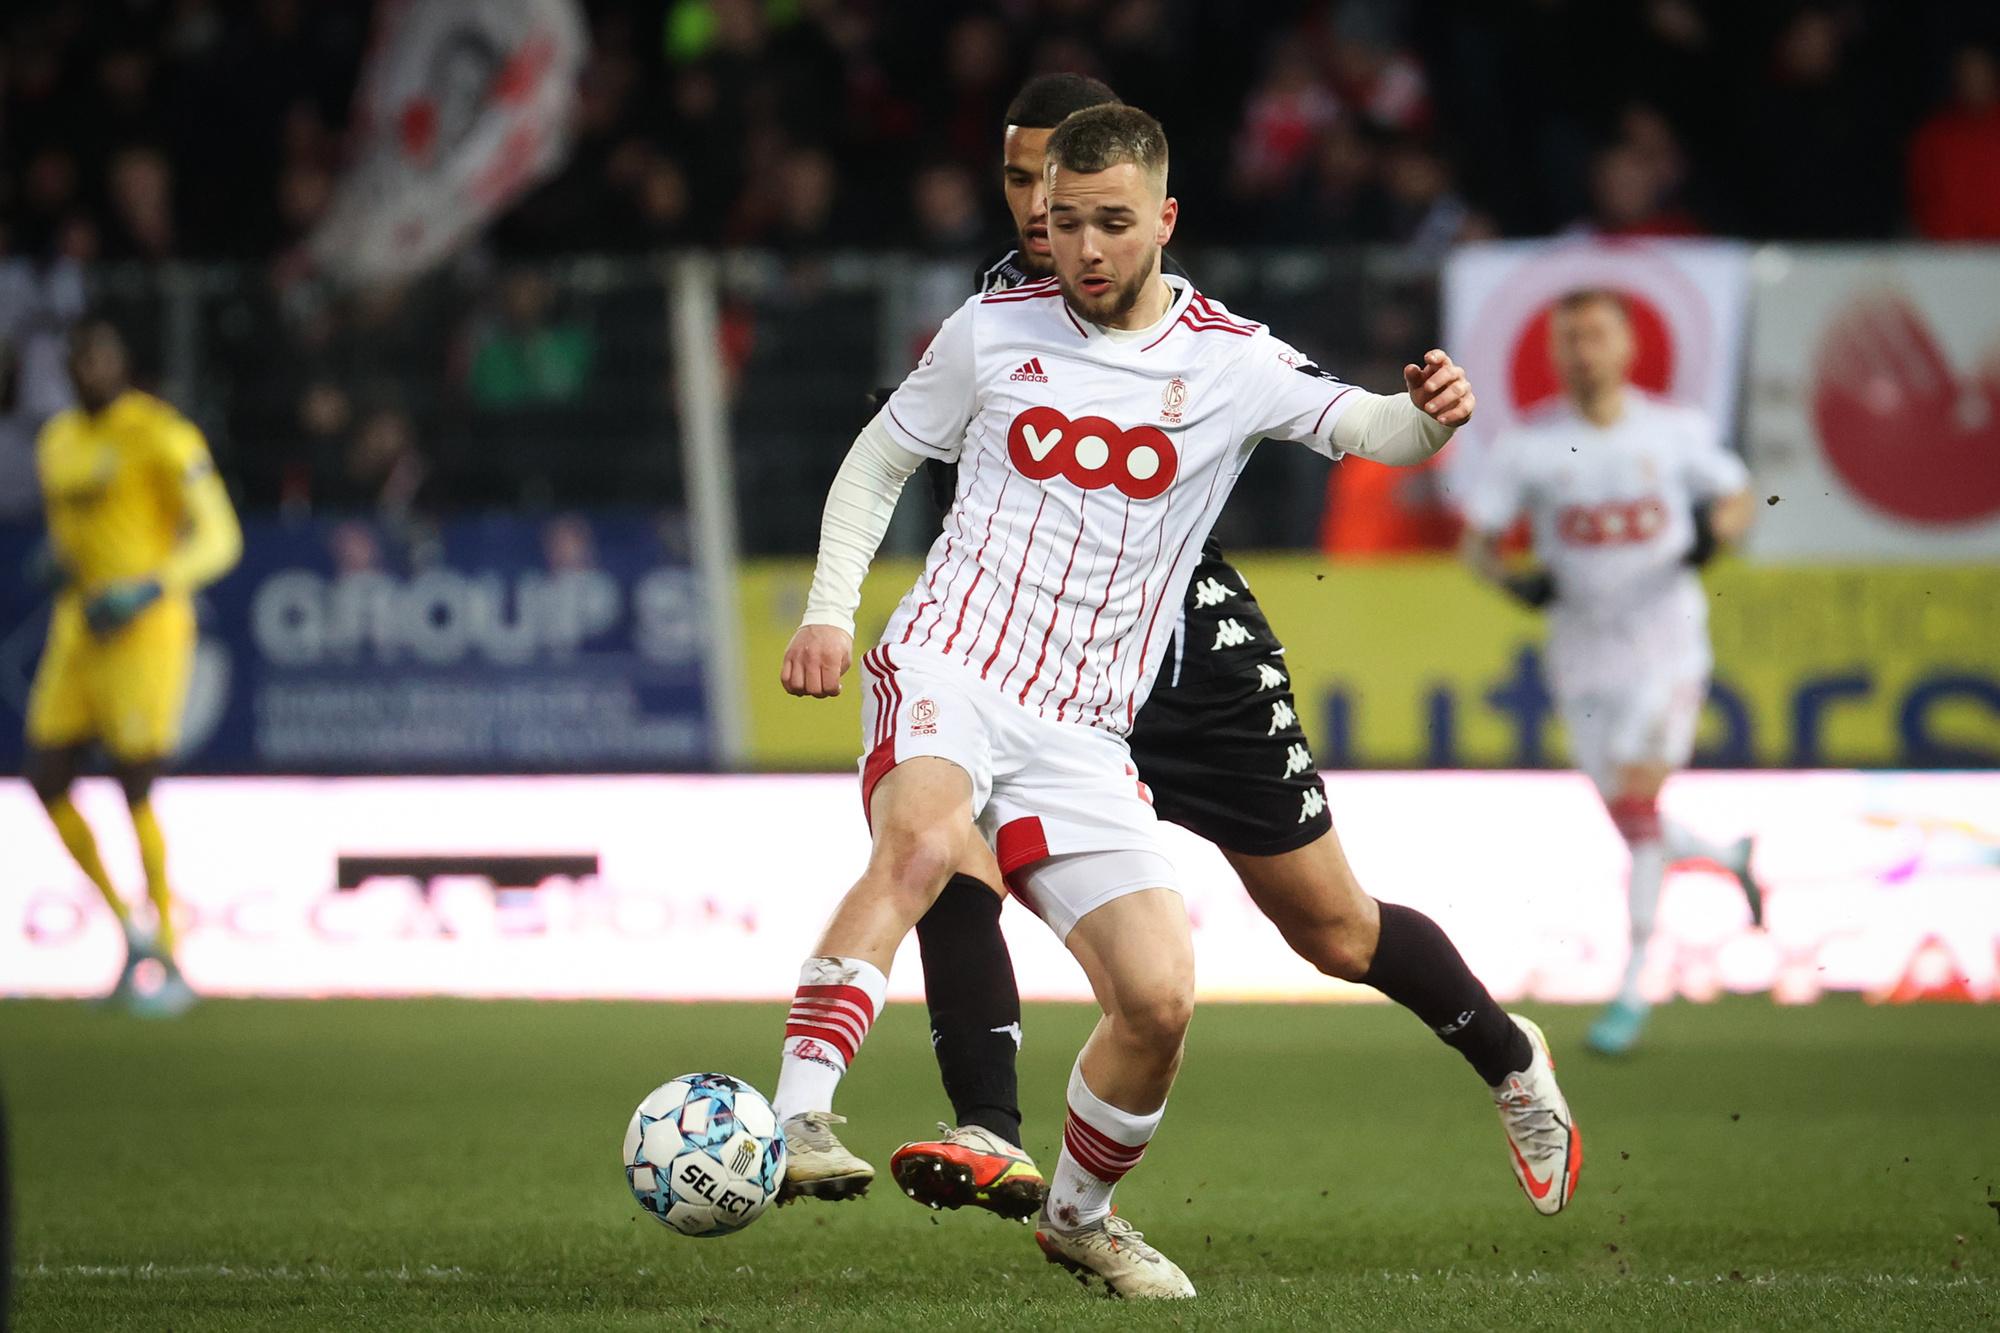 De verdwenen Olsson bij Anderlecht en doelpuntenmachine Frey: vijf tactische thema's van het afgelopen weekend